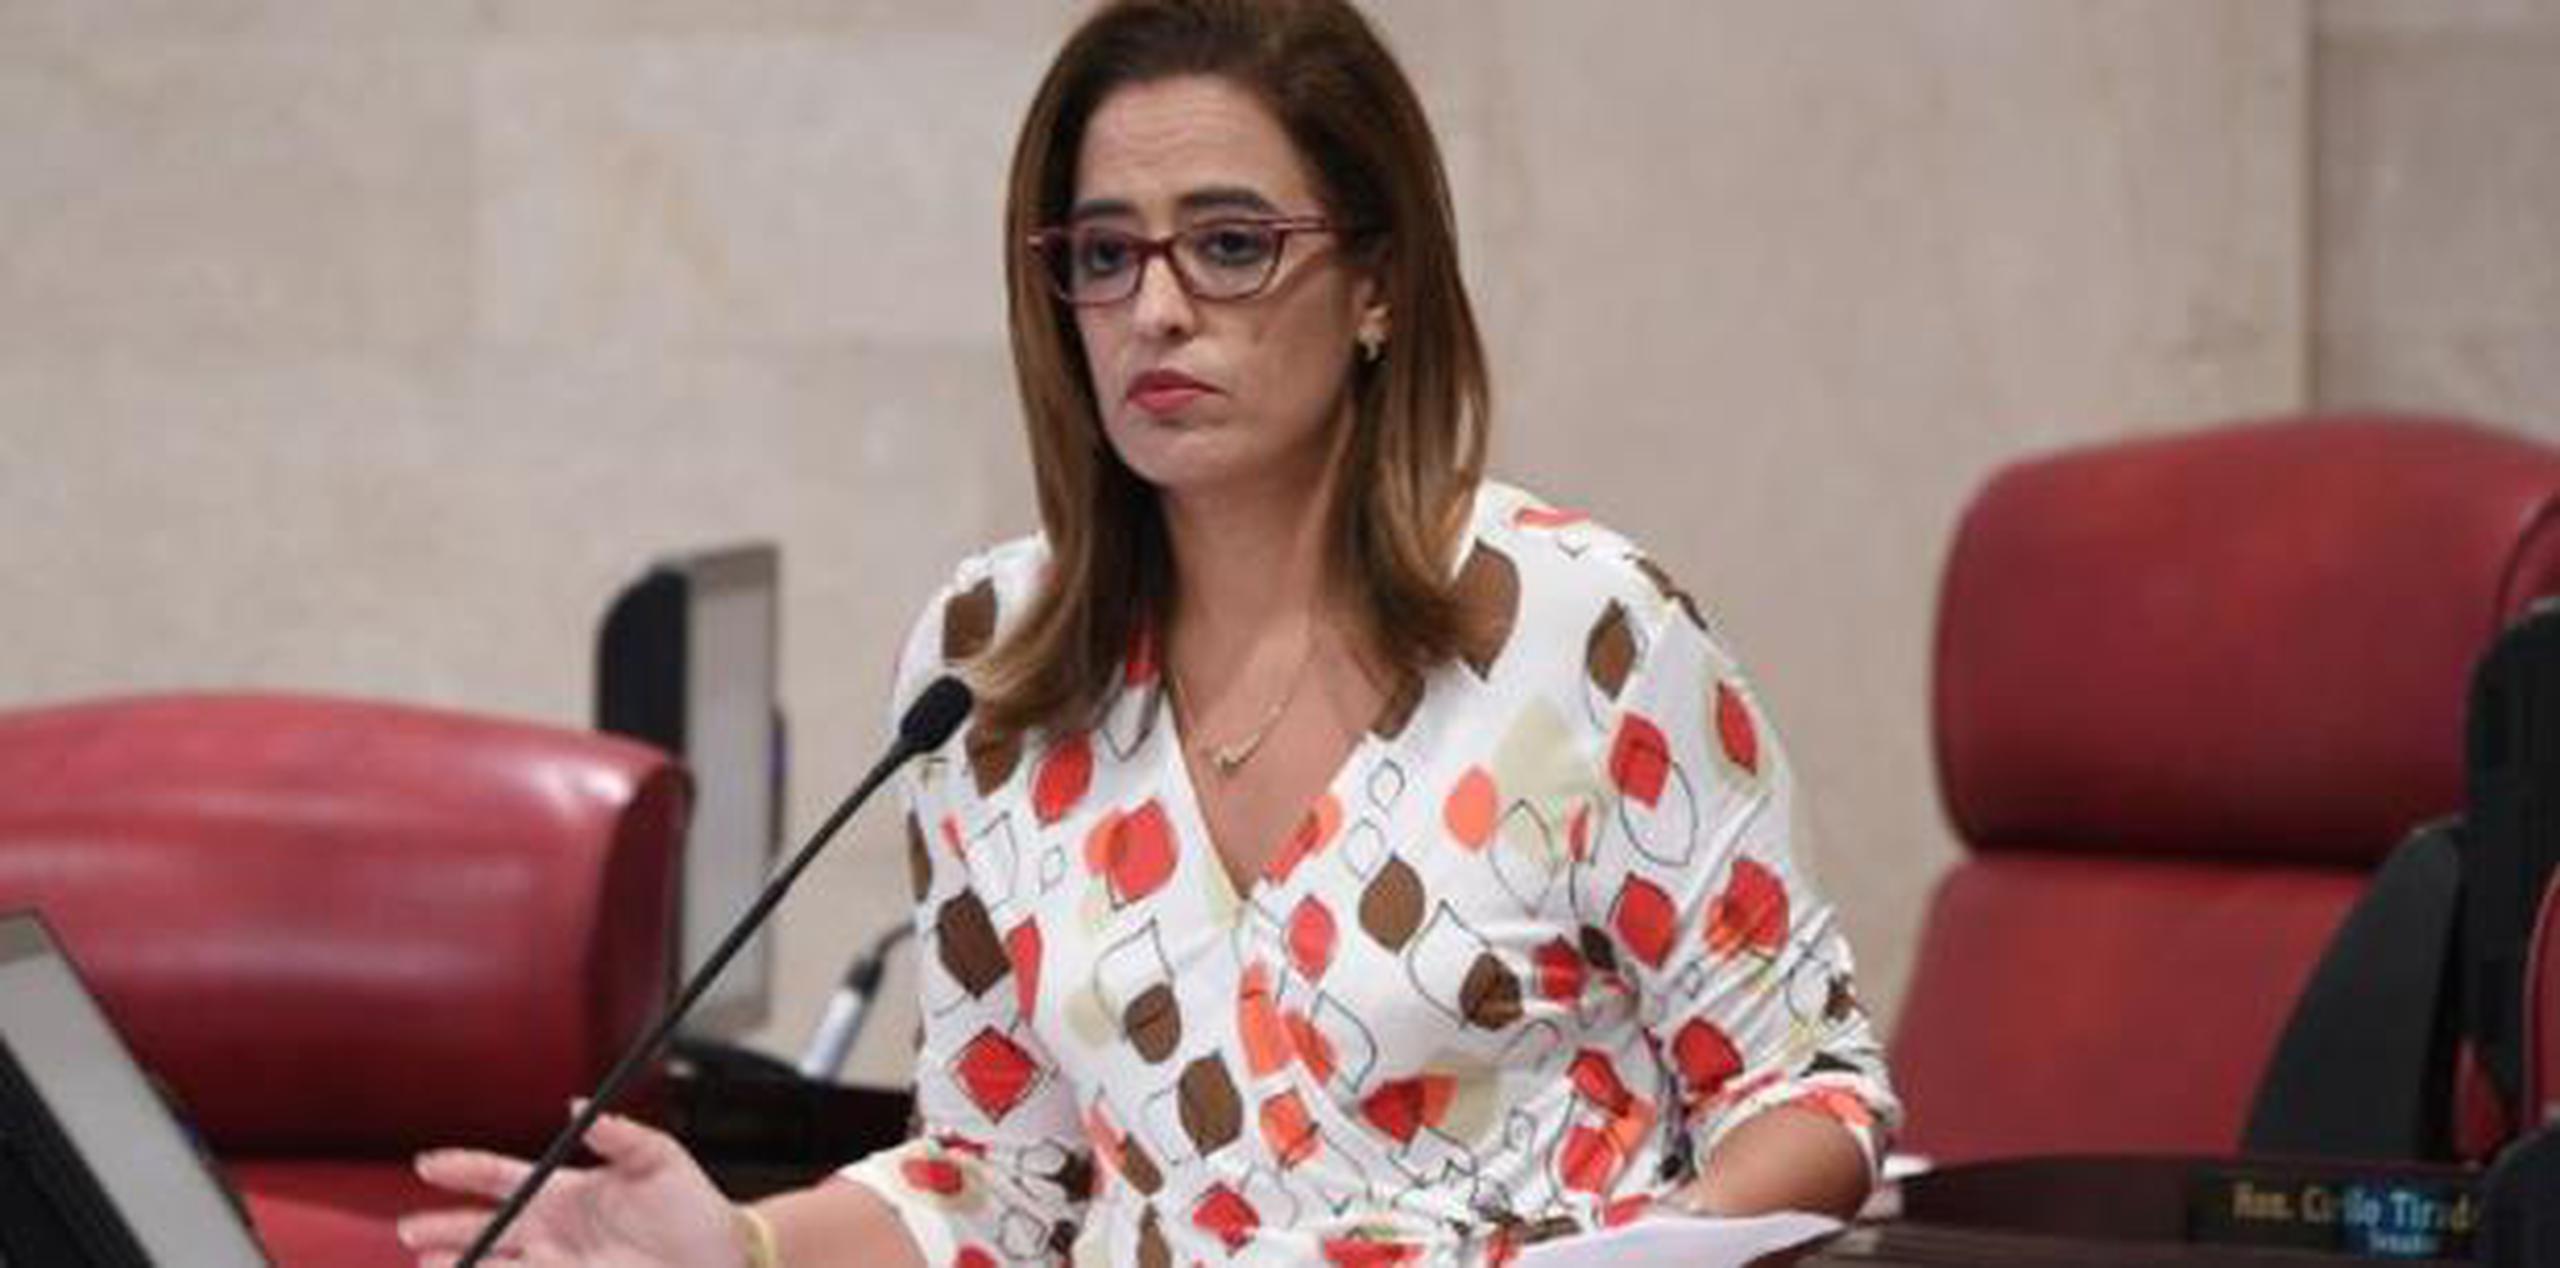 Rossana López León, presidenta del comité municipal del Partido Popular Democrático (PPD) en San Juan y candidata a alcaldesa. (Archivo)